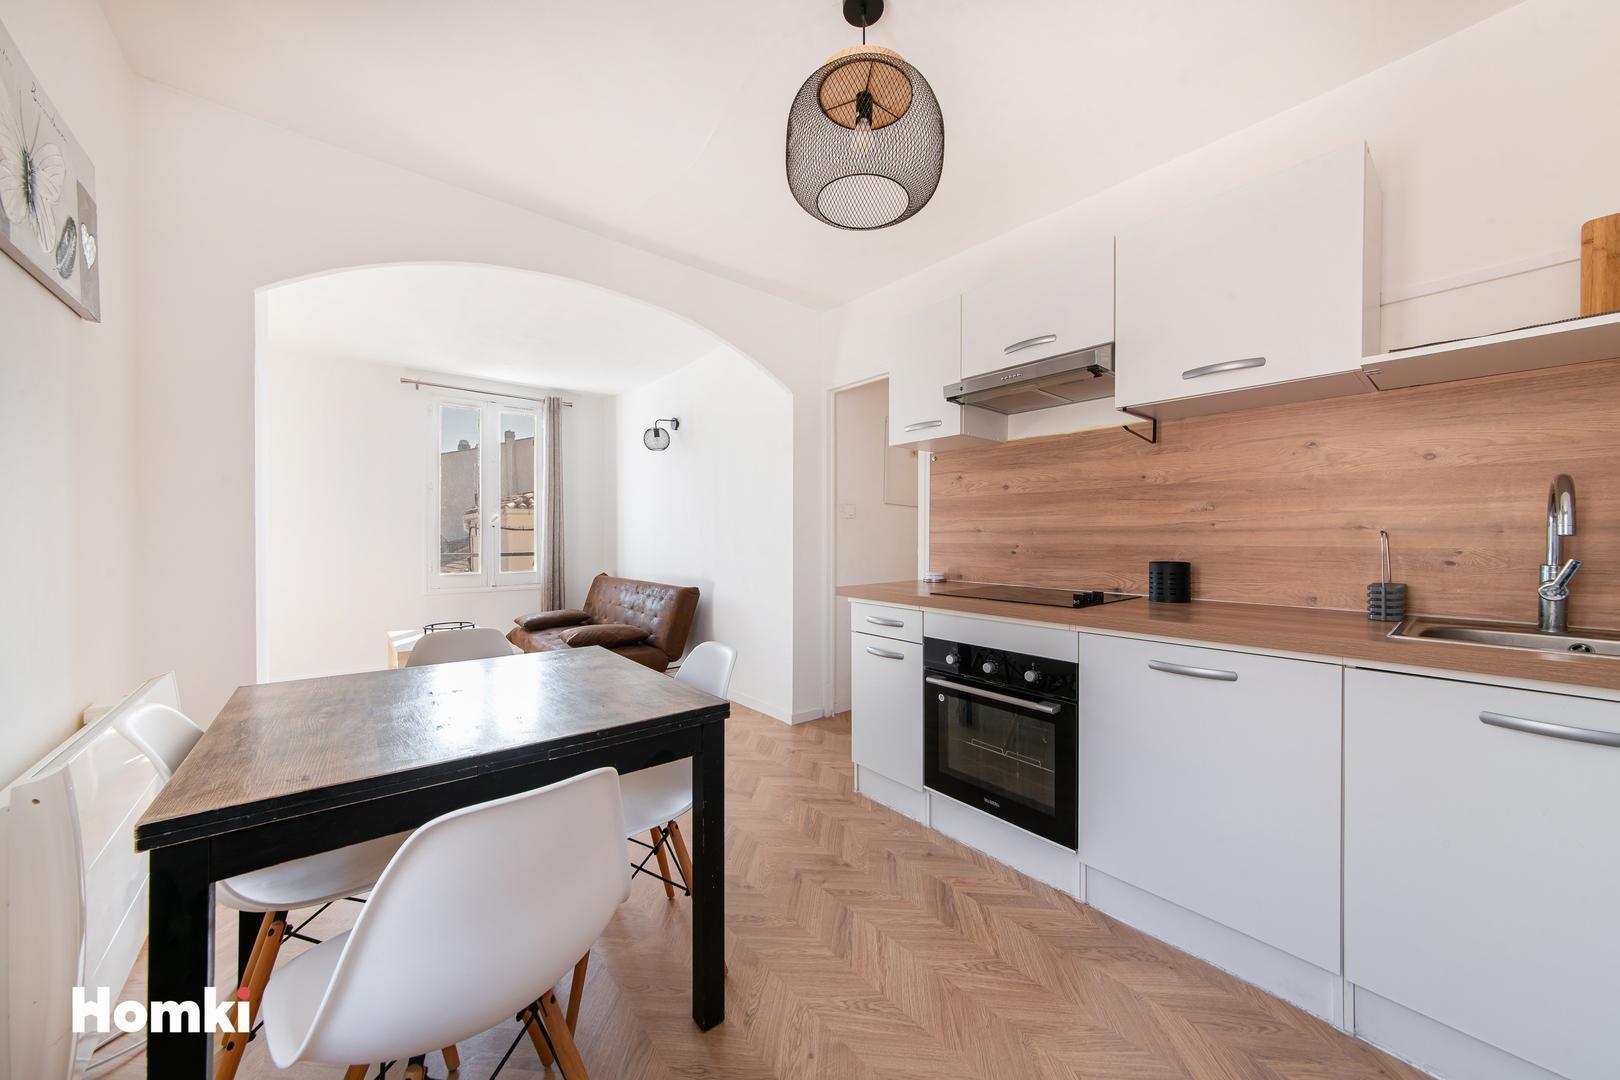 Homki - Vente Appartement  de 34.1 m² à Martigues 13500